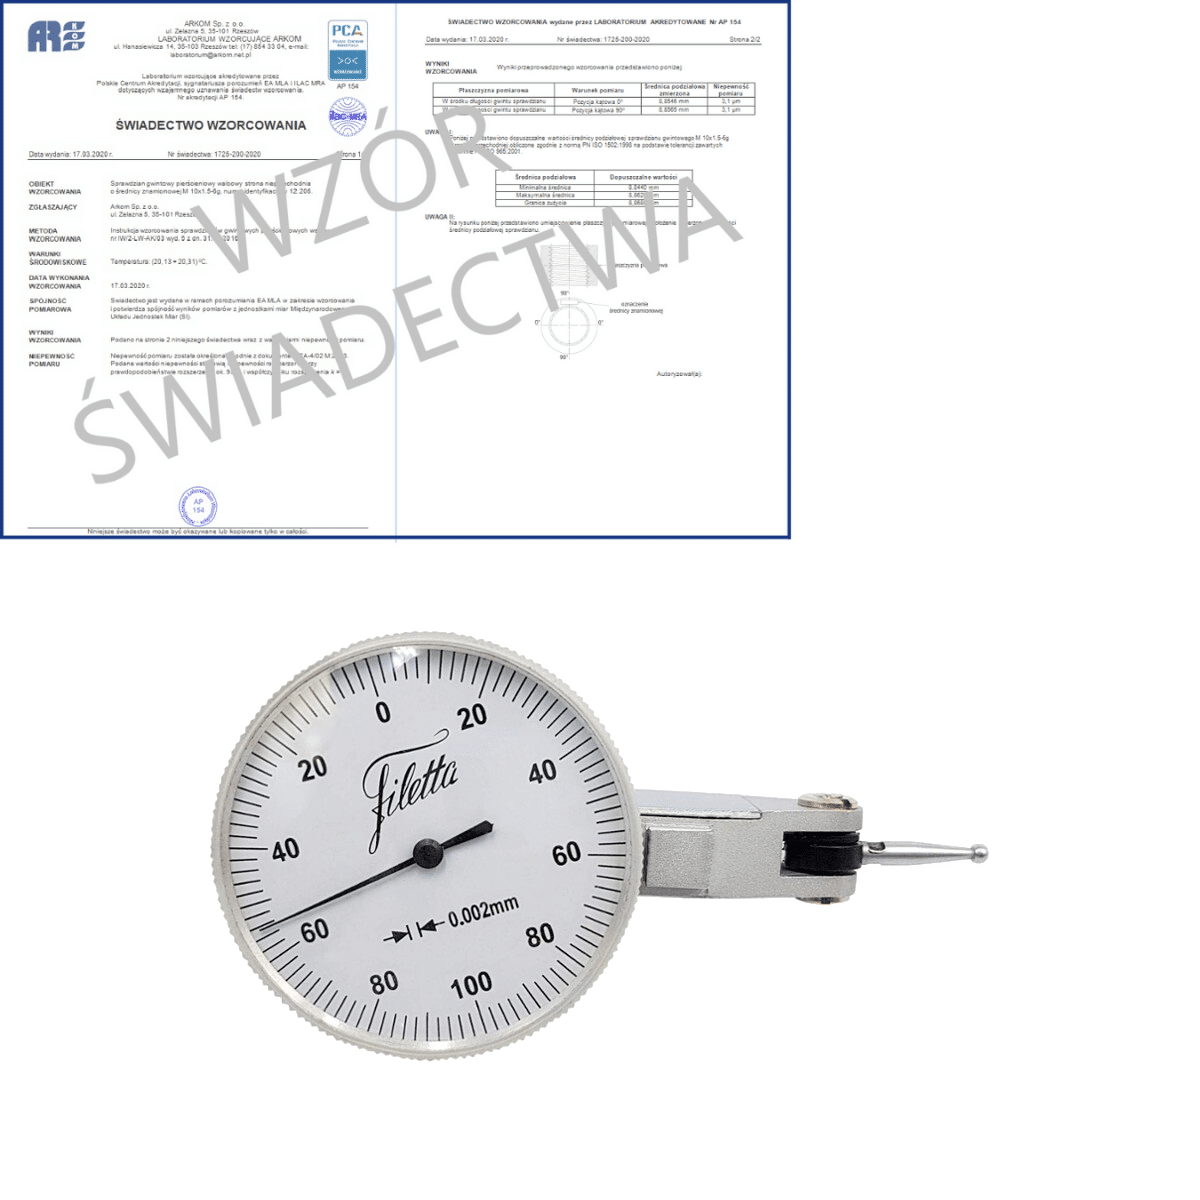 SCHUT czujnik dźwigniowo-zębaty 0-100-0/0.2/0.002mm diatest + świadectwo wzorcowania PCA 907.942 WZORC (Zdjęcie 1)